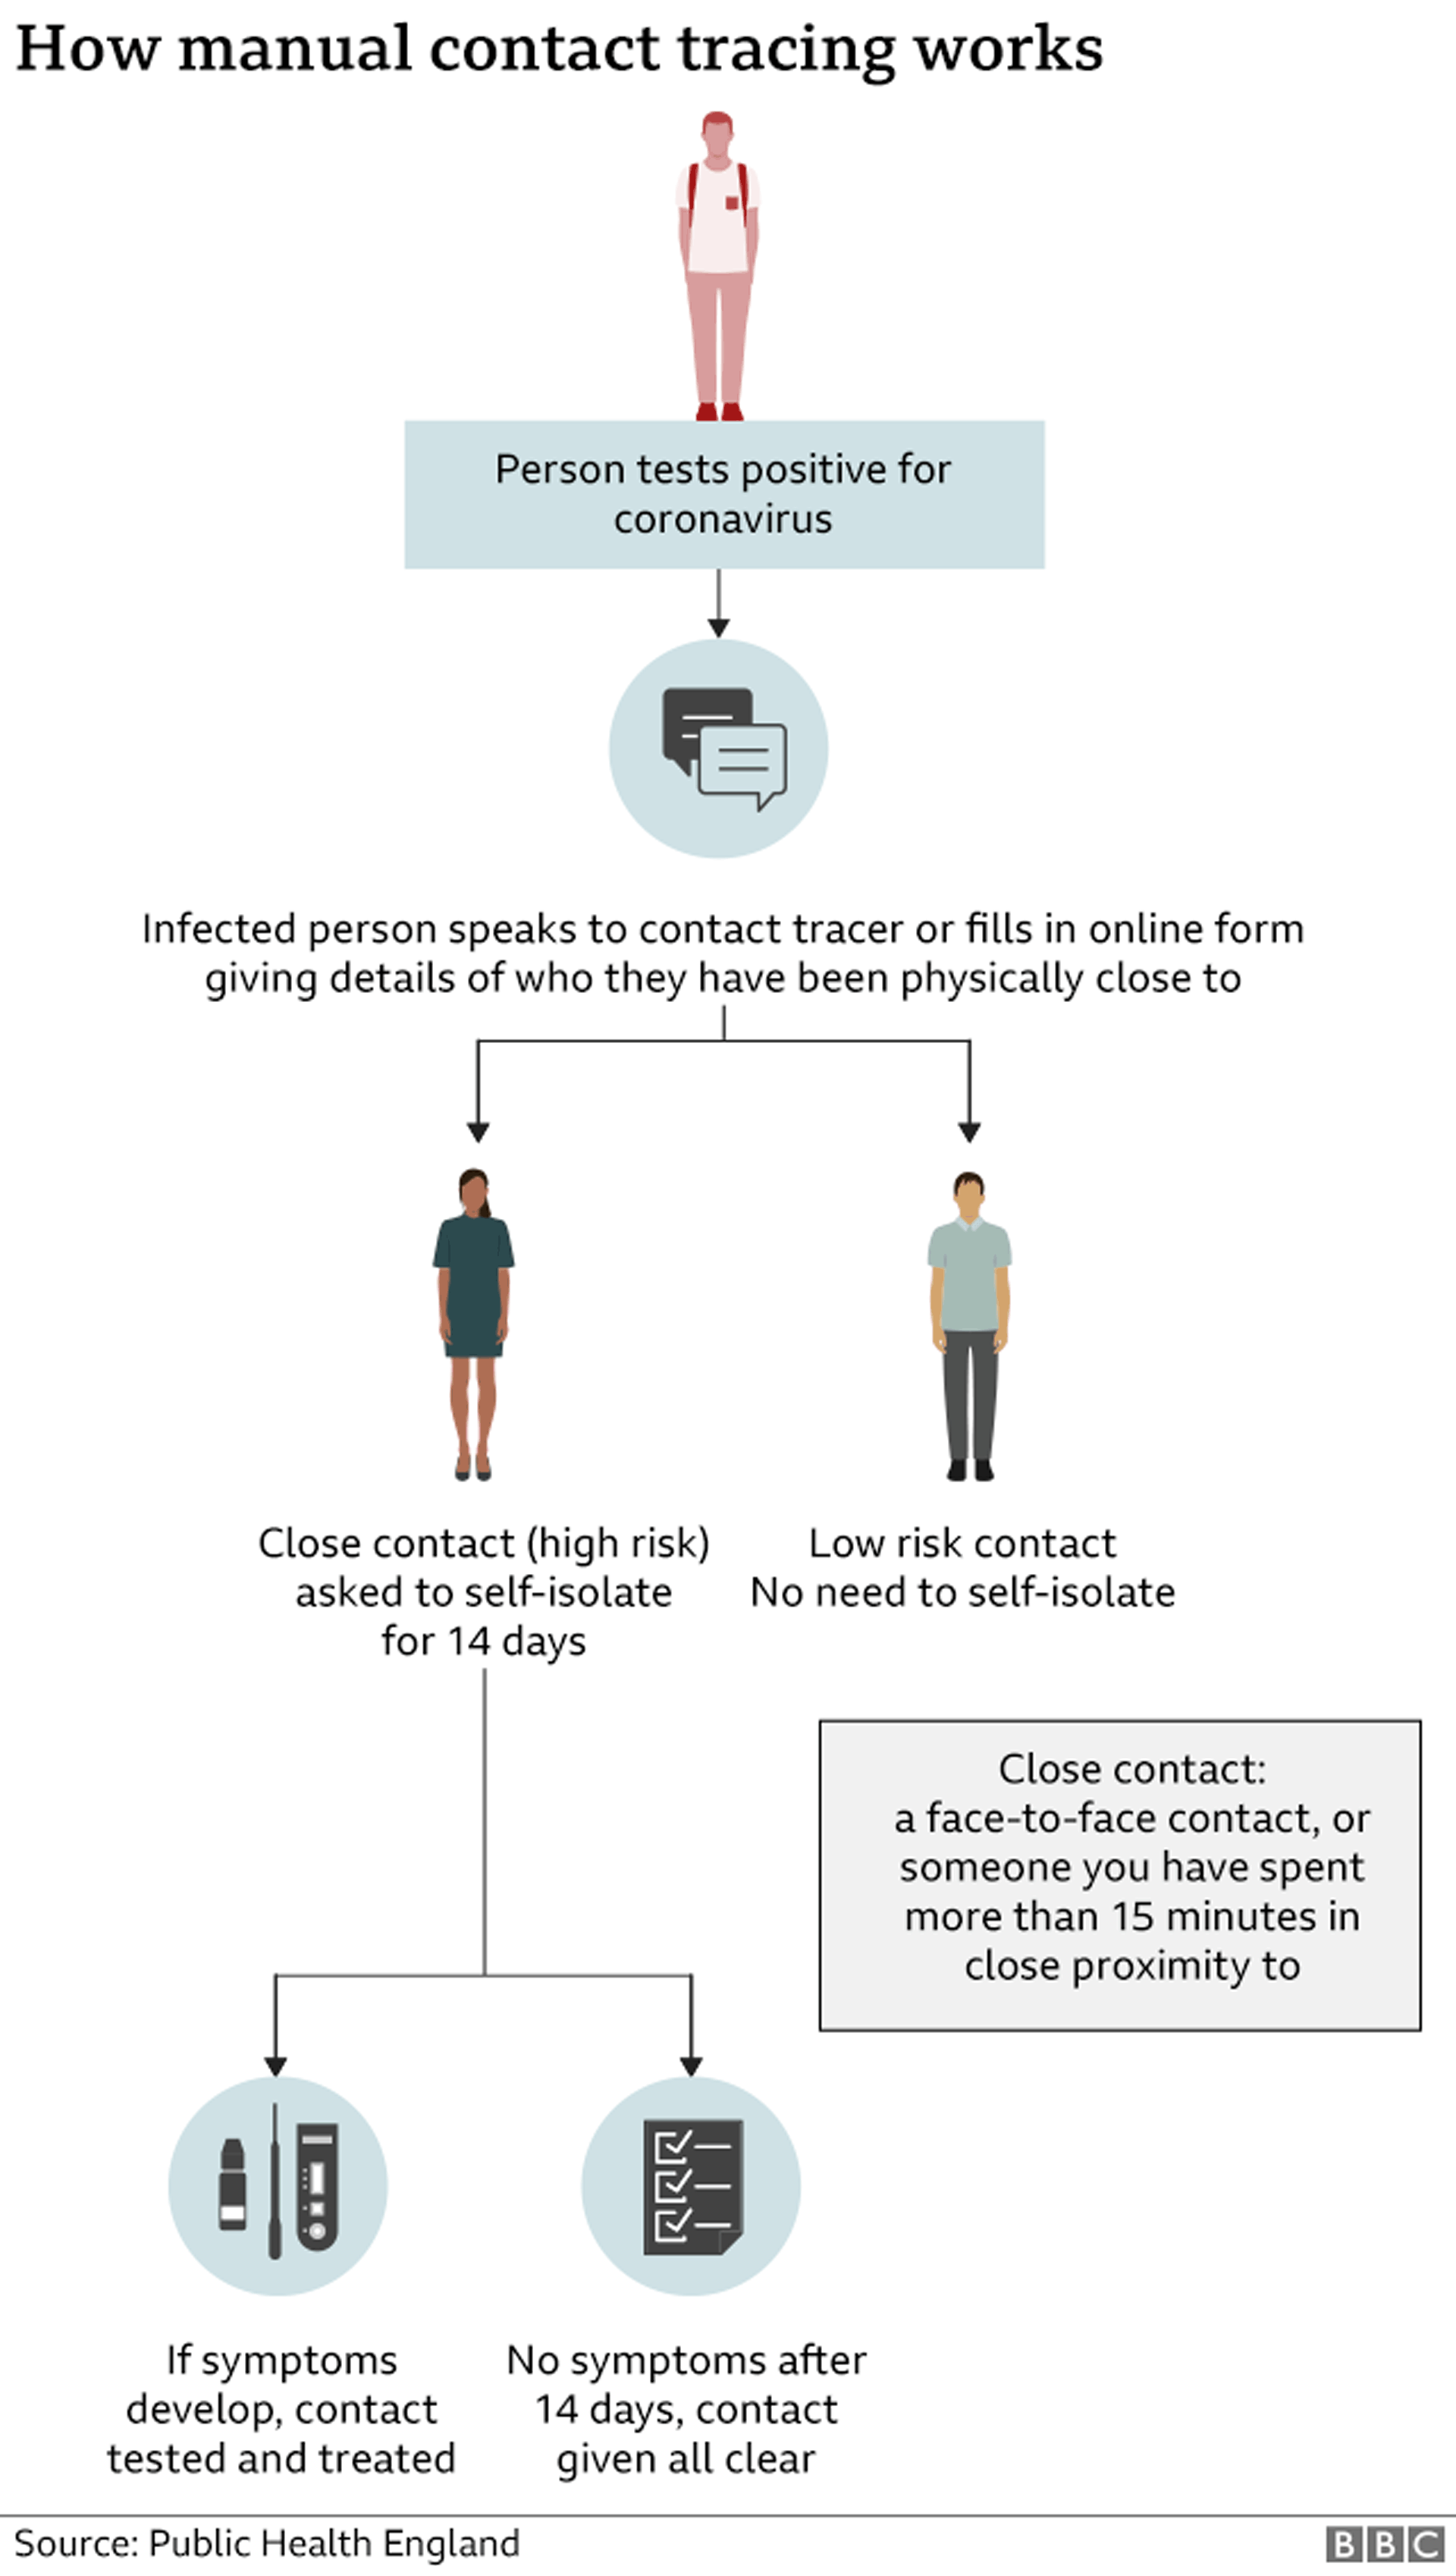 Графика: Как работает отслеживание контактов вручную